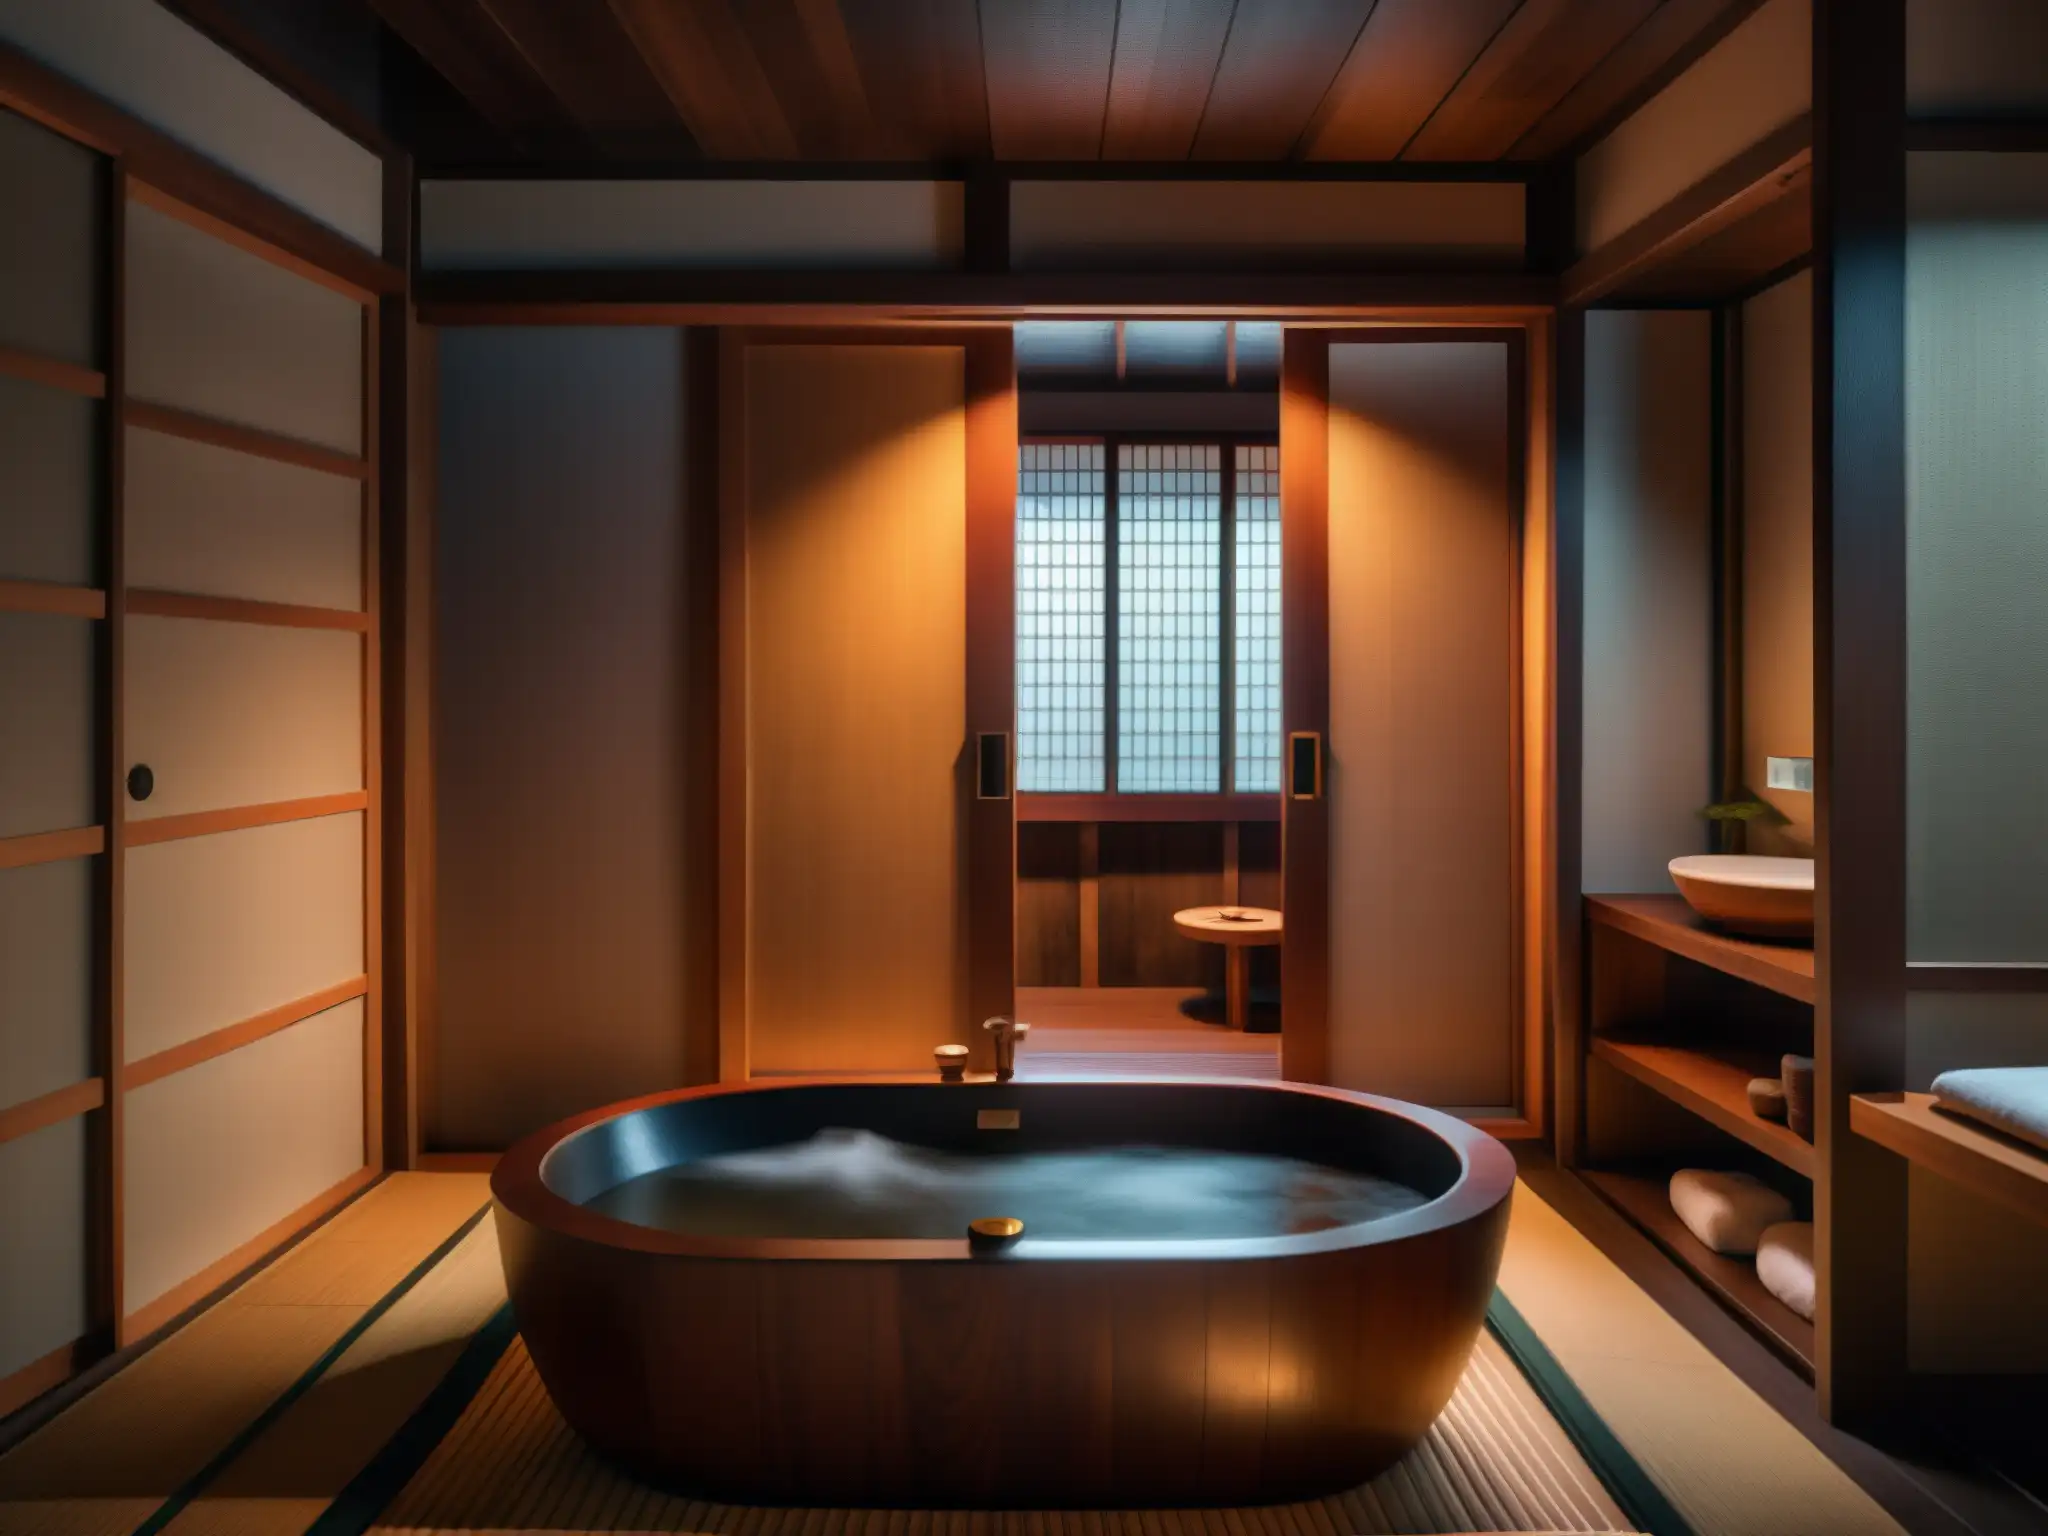 Imagen detallada de un baño japonés tradicional con una figura en capa roja en la esquina, envuelta en una atmósfera misteriosa